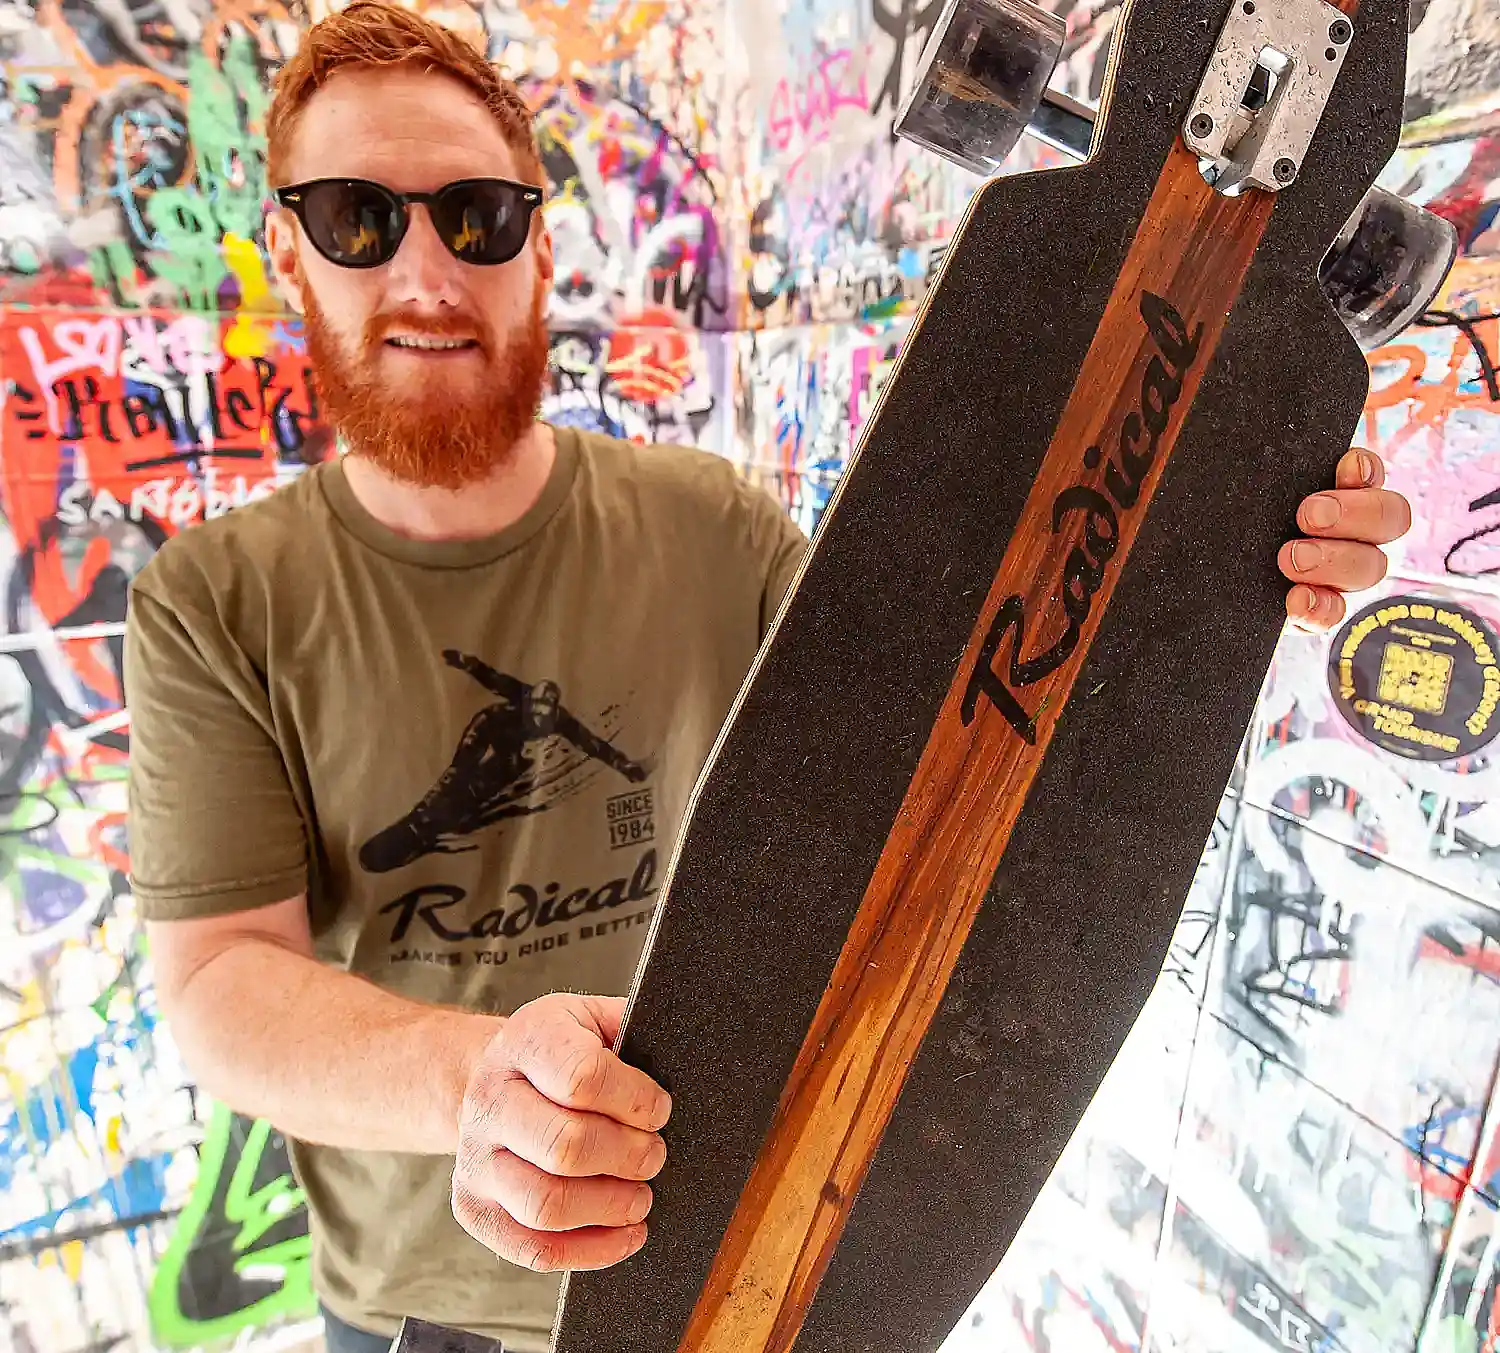 Radical bringt Skateboards auf den Markt